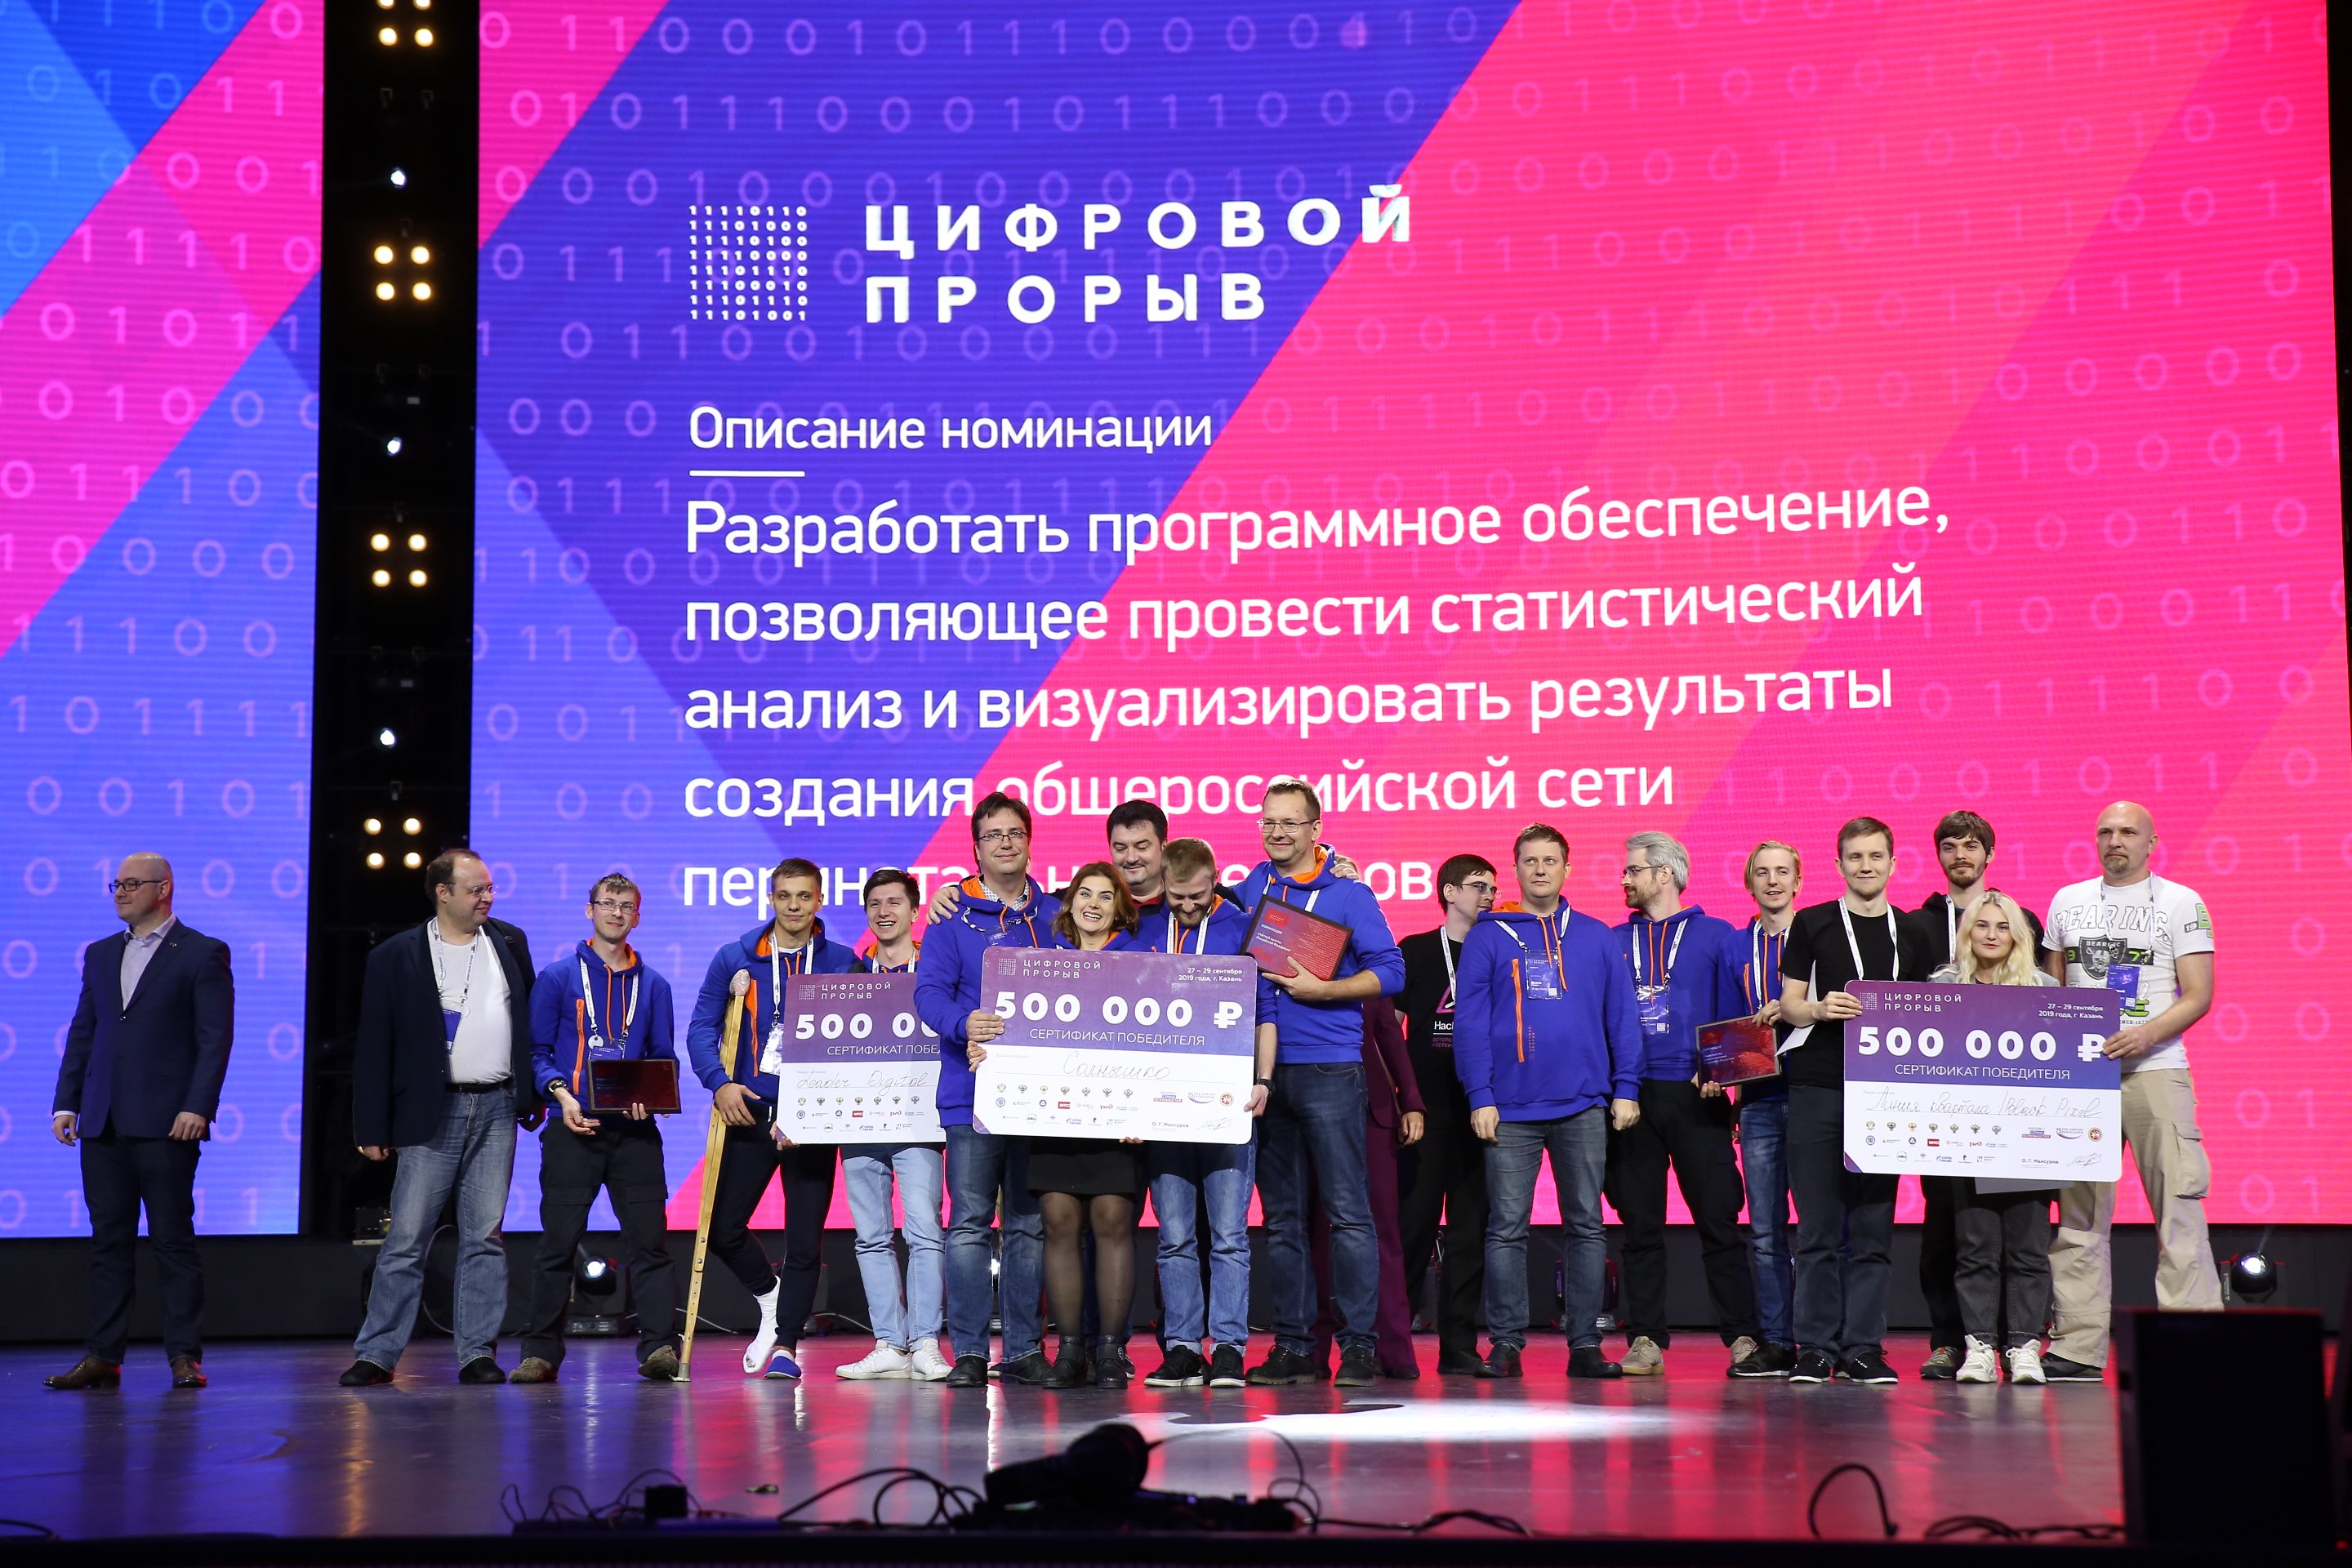 Дмитрий Кузнецов из Брянска стал одним из победителей финала конкурса «Цифровой прорыв»